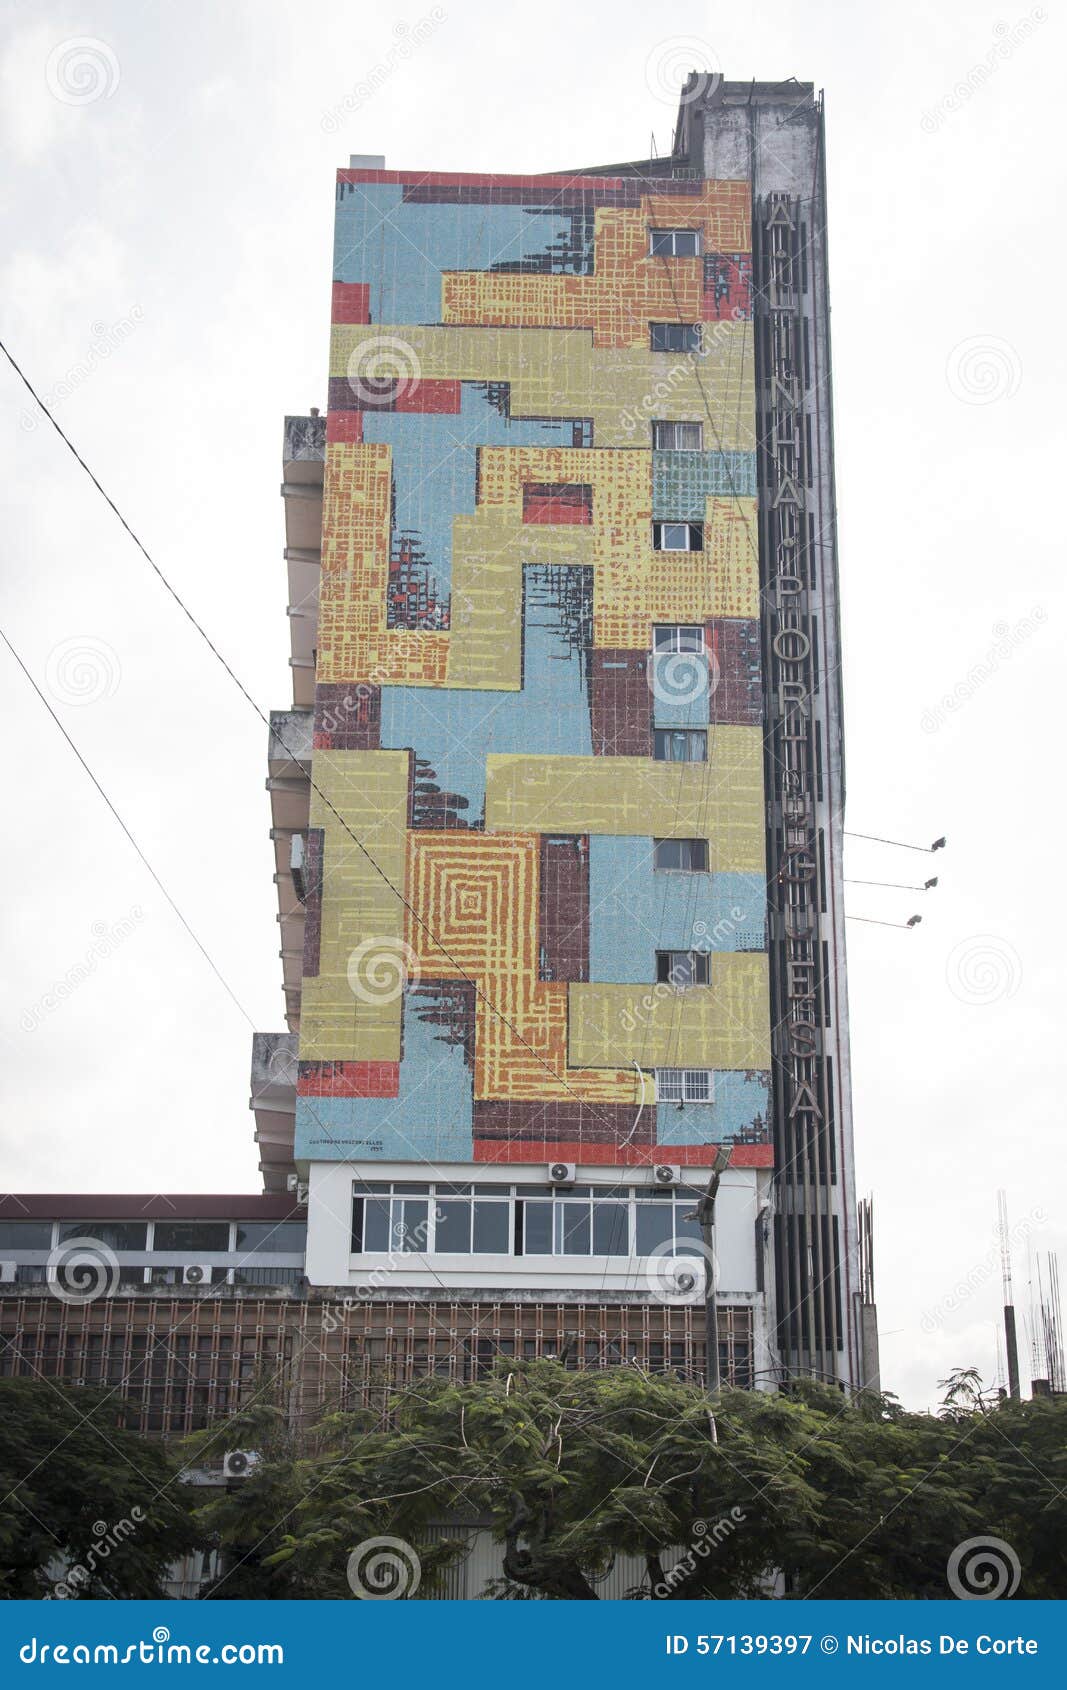 Edificio colorido en Maputo, Mozambique. Edificio colorido en Maputo, la capital de Mozambique